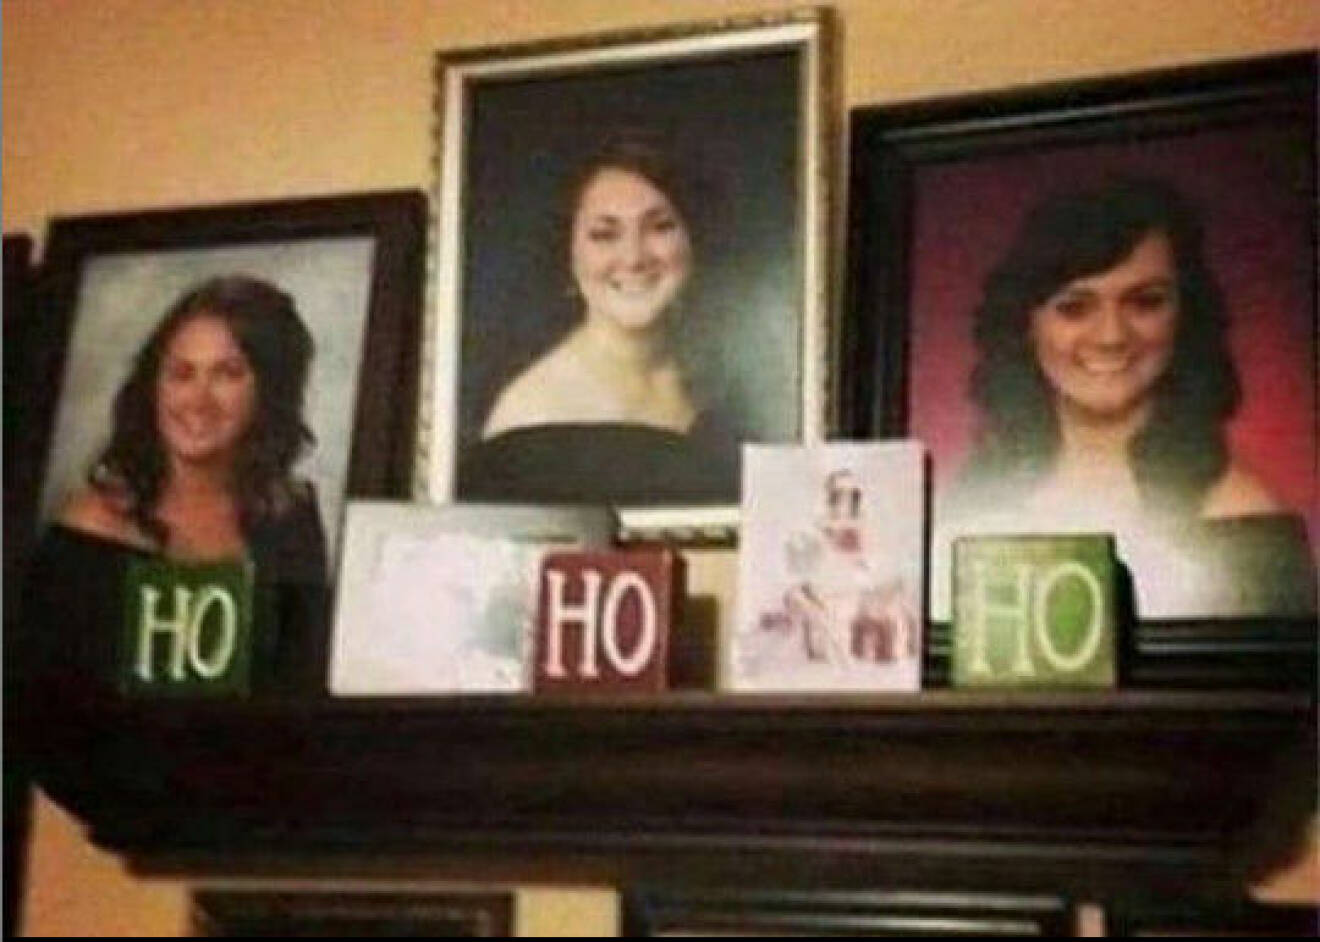 Ho Ho Ho" står det under de tre systrarnas bilder.